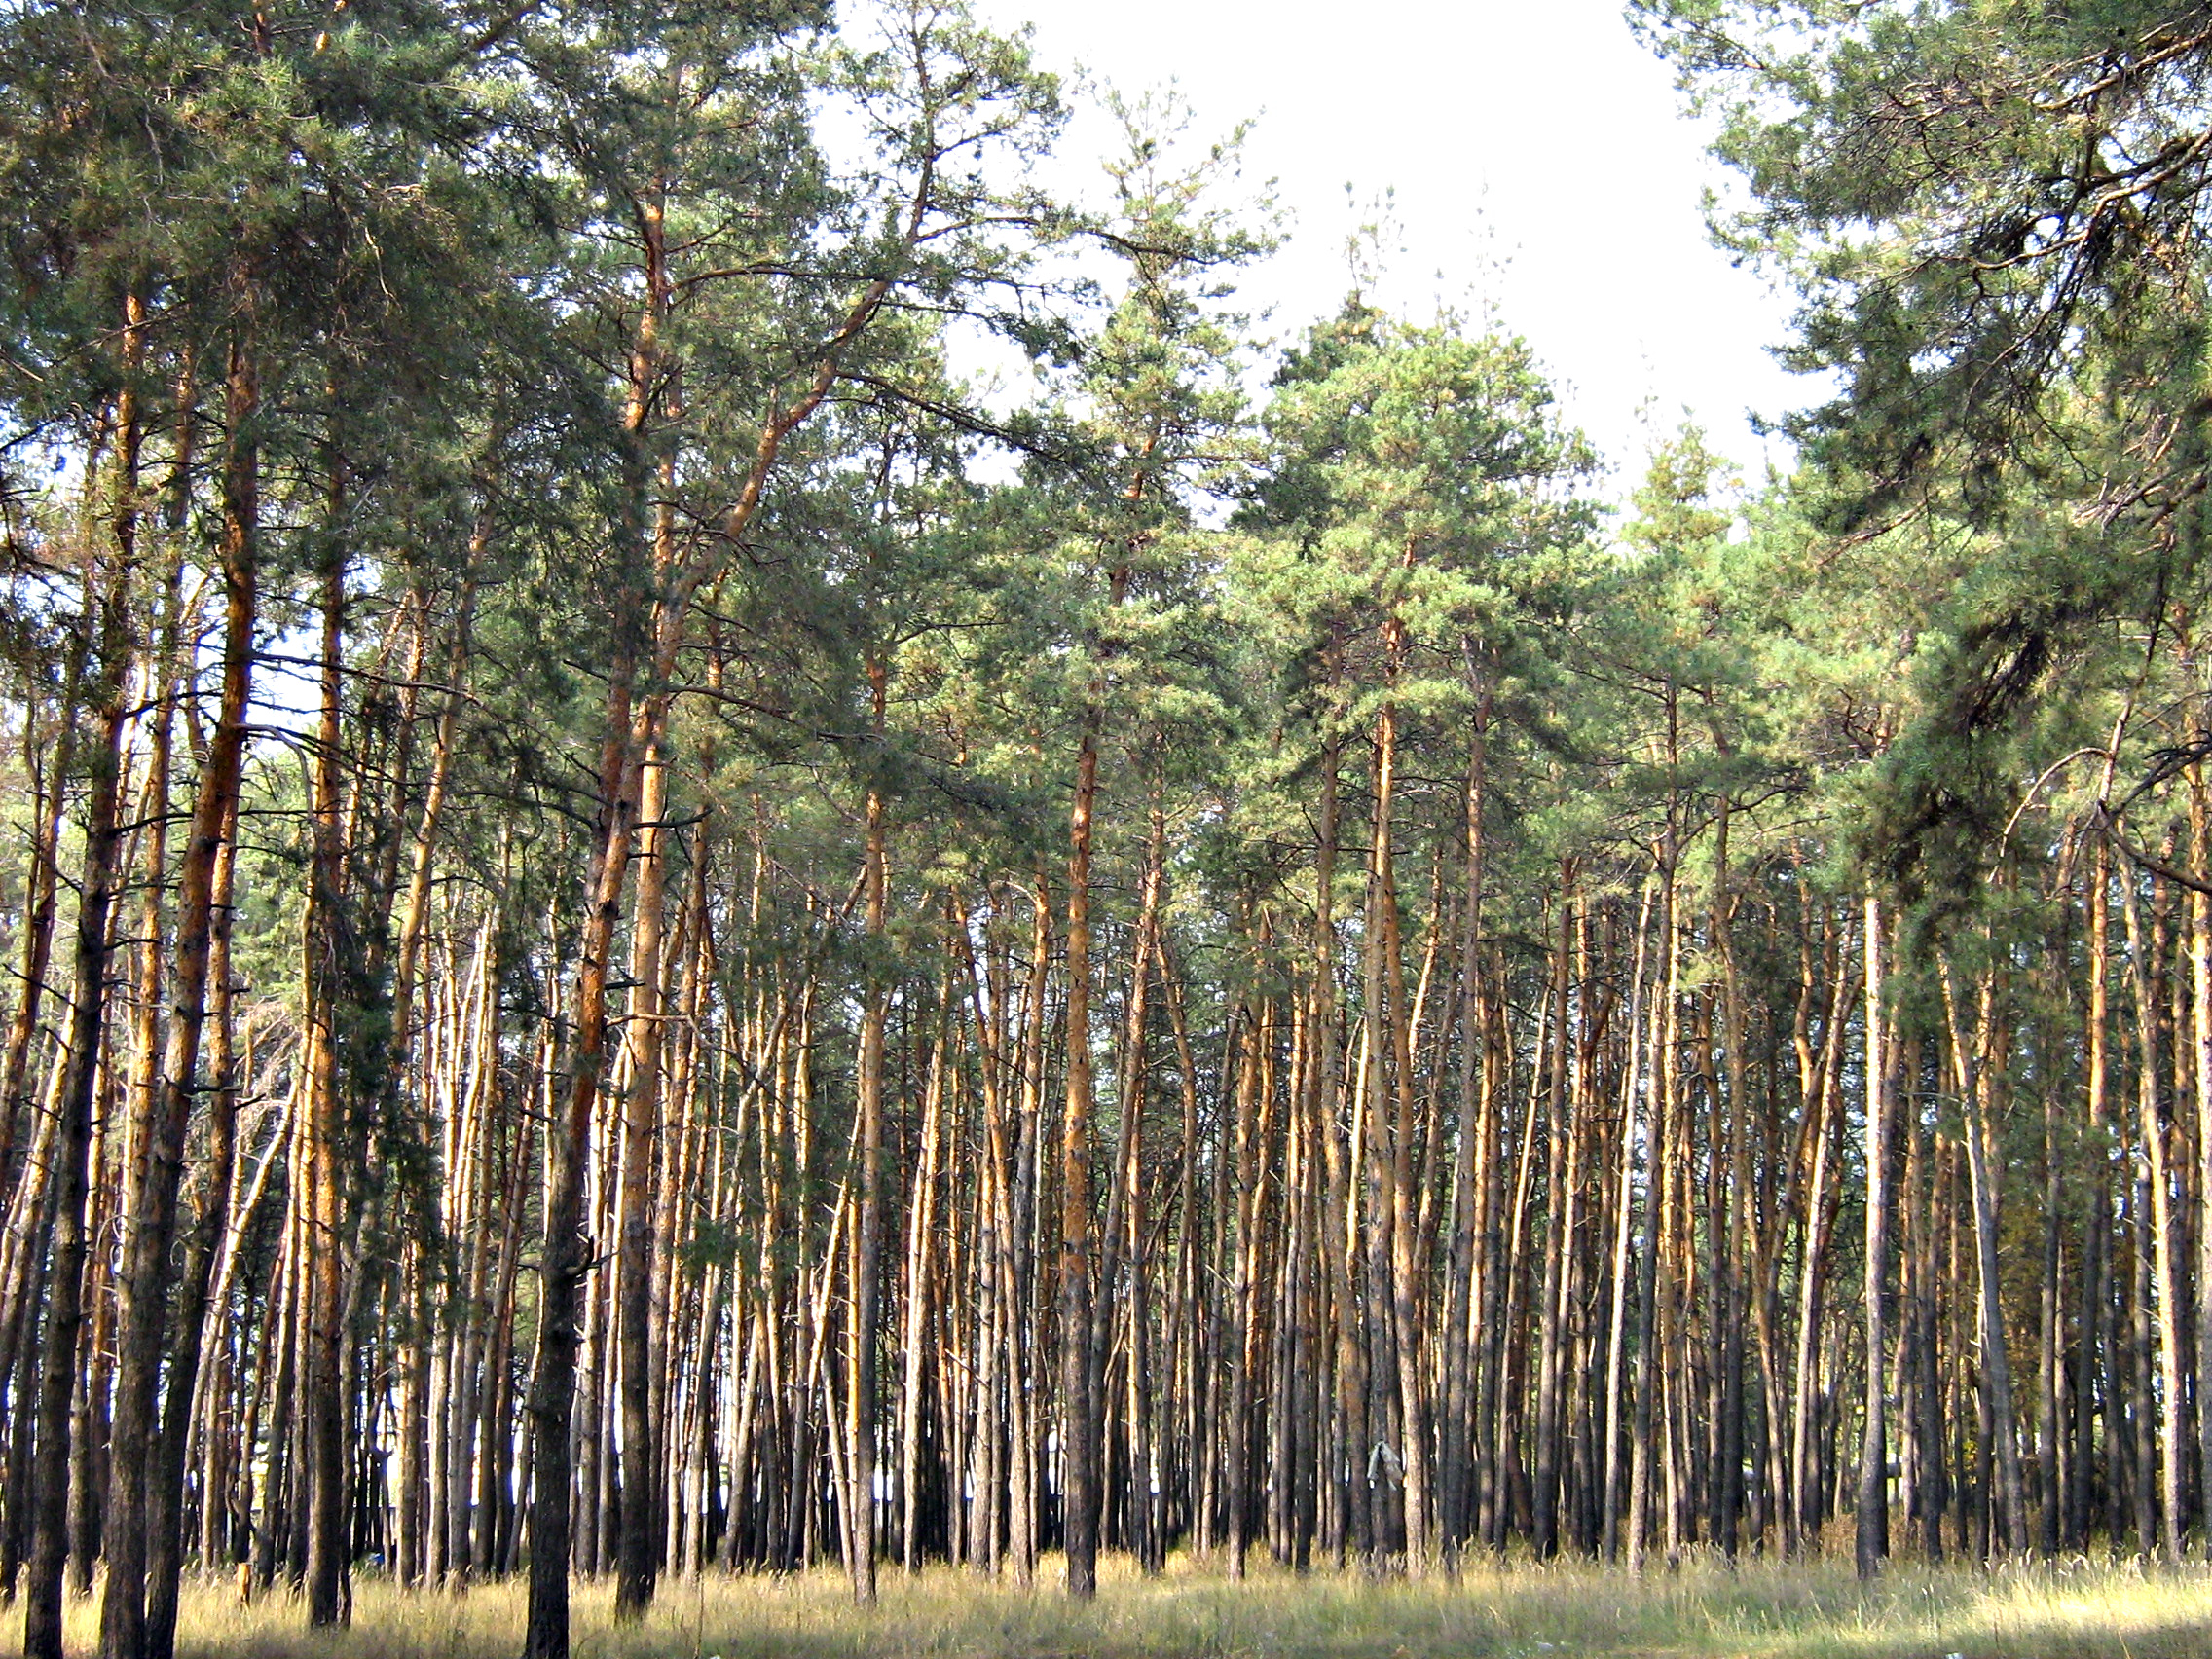 67 gektarov Borispol'skogo lesa vozvrashheny gosudarstvu